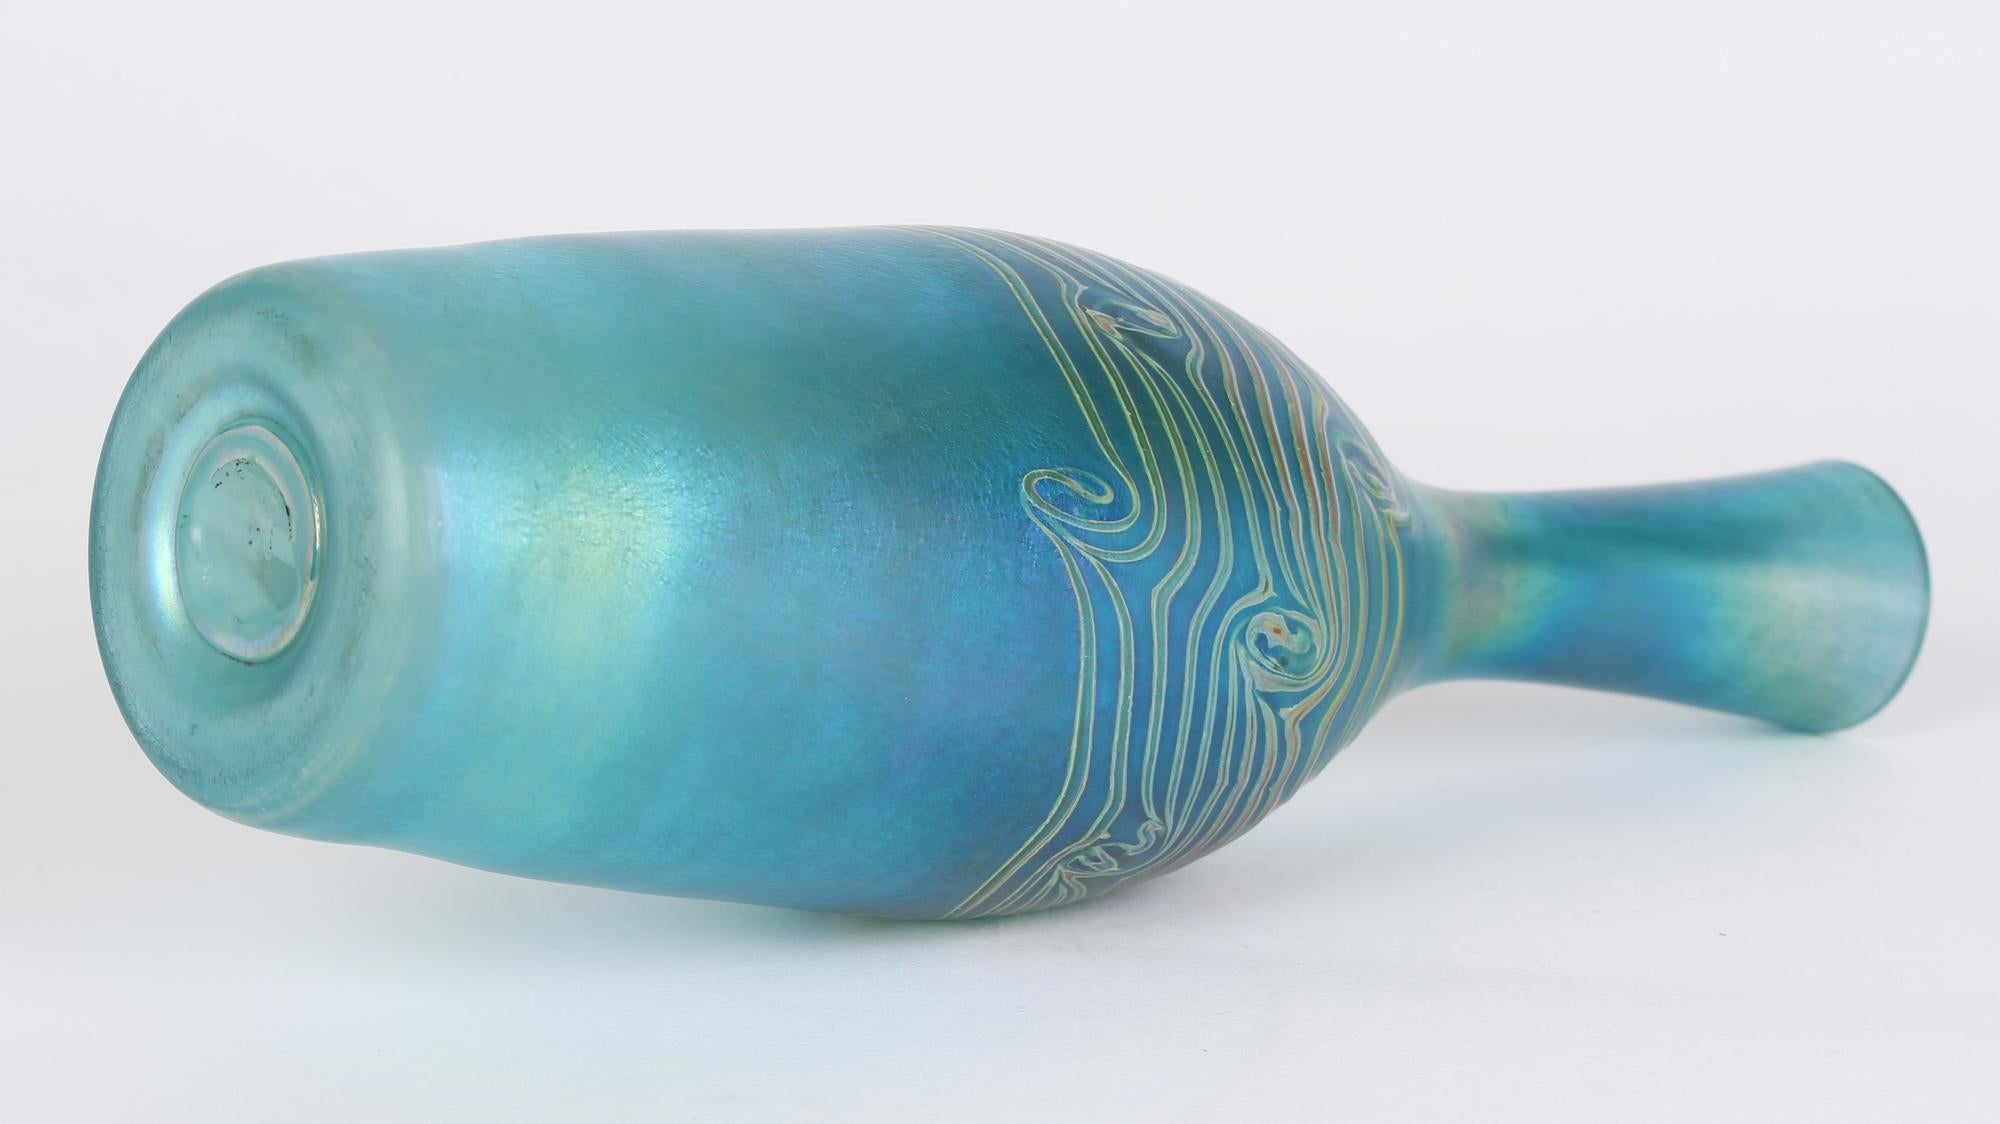 Hohe, stilvolle, blau schillernde, flaschenförmige Kunstglasvase mit Pfauenmotiven aus dem 20. Jahrhundert. Die mundgeblasene Vase hat eine hohe, schlanke Form und ist aus blau getöntem Glas mit einem wunderbaren öligen Schimmer auf der Oberfläche